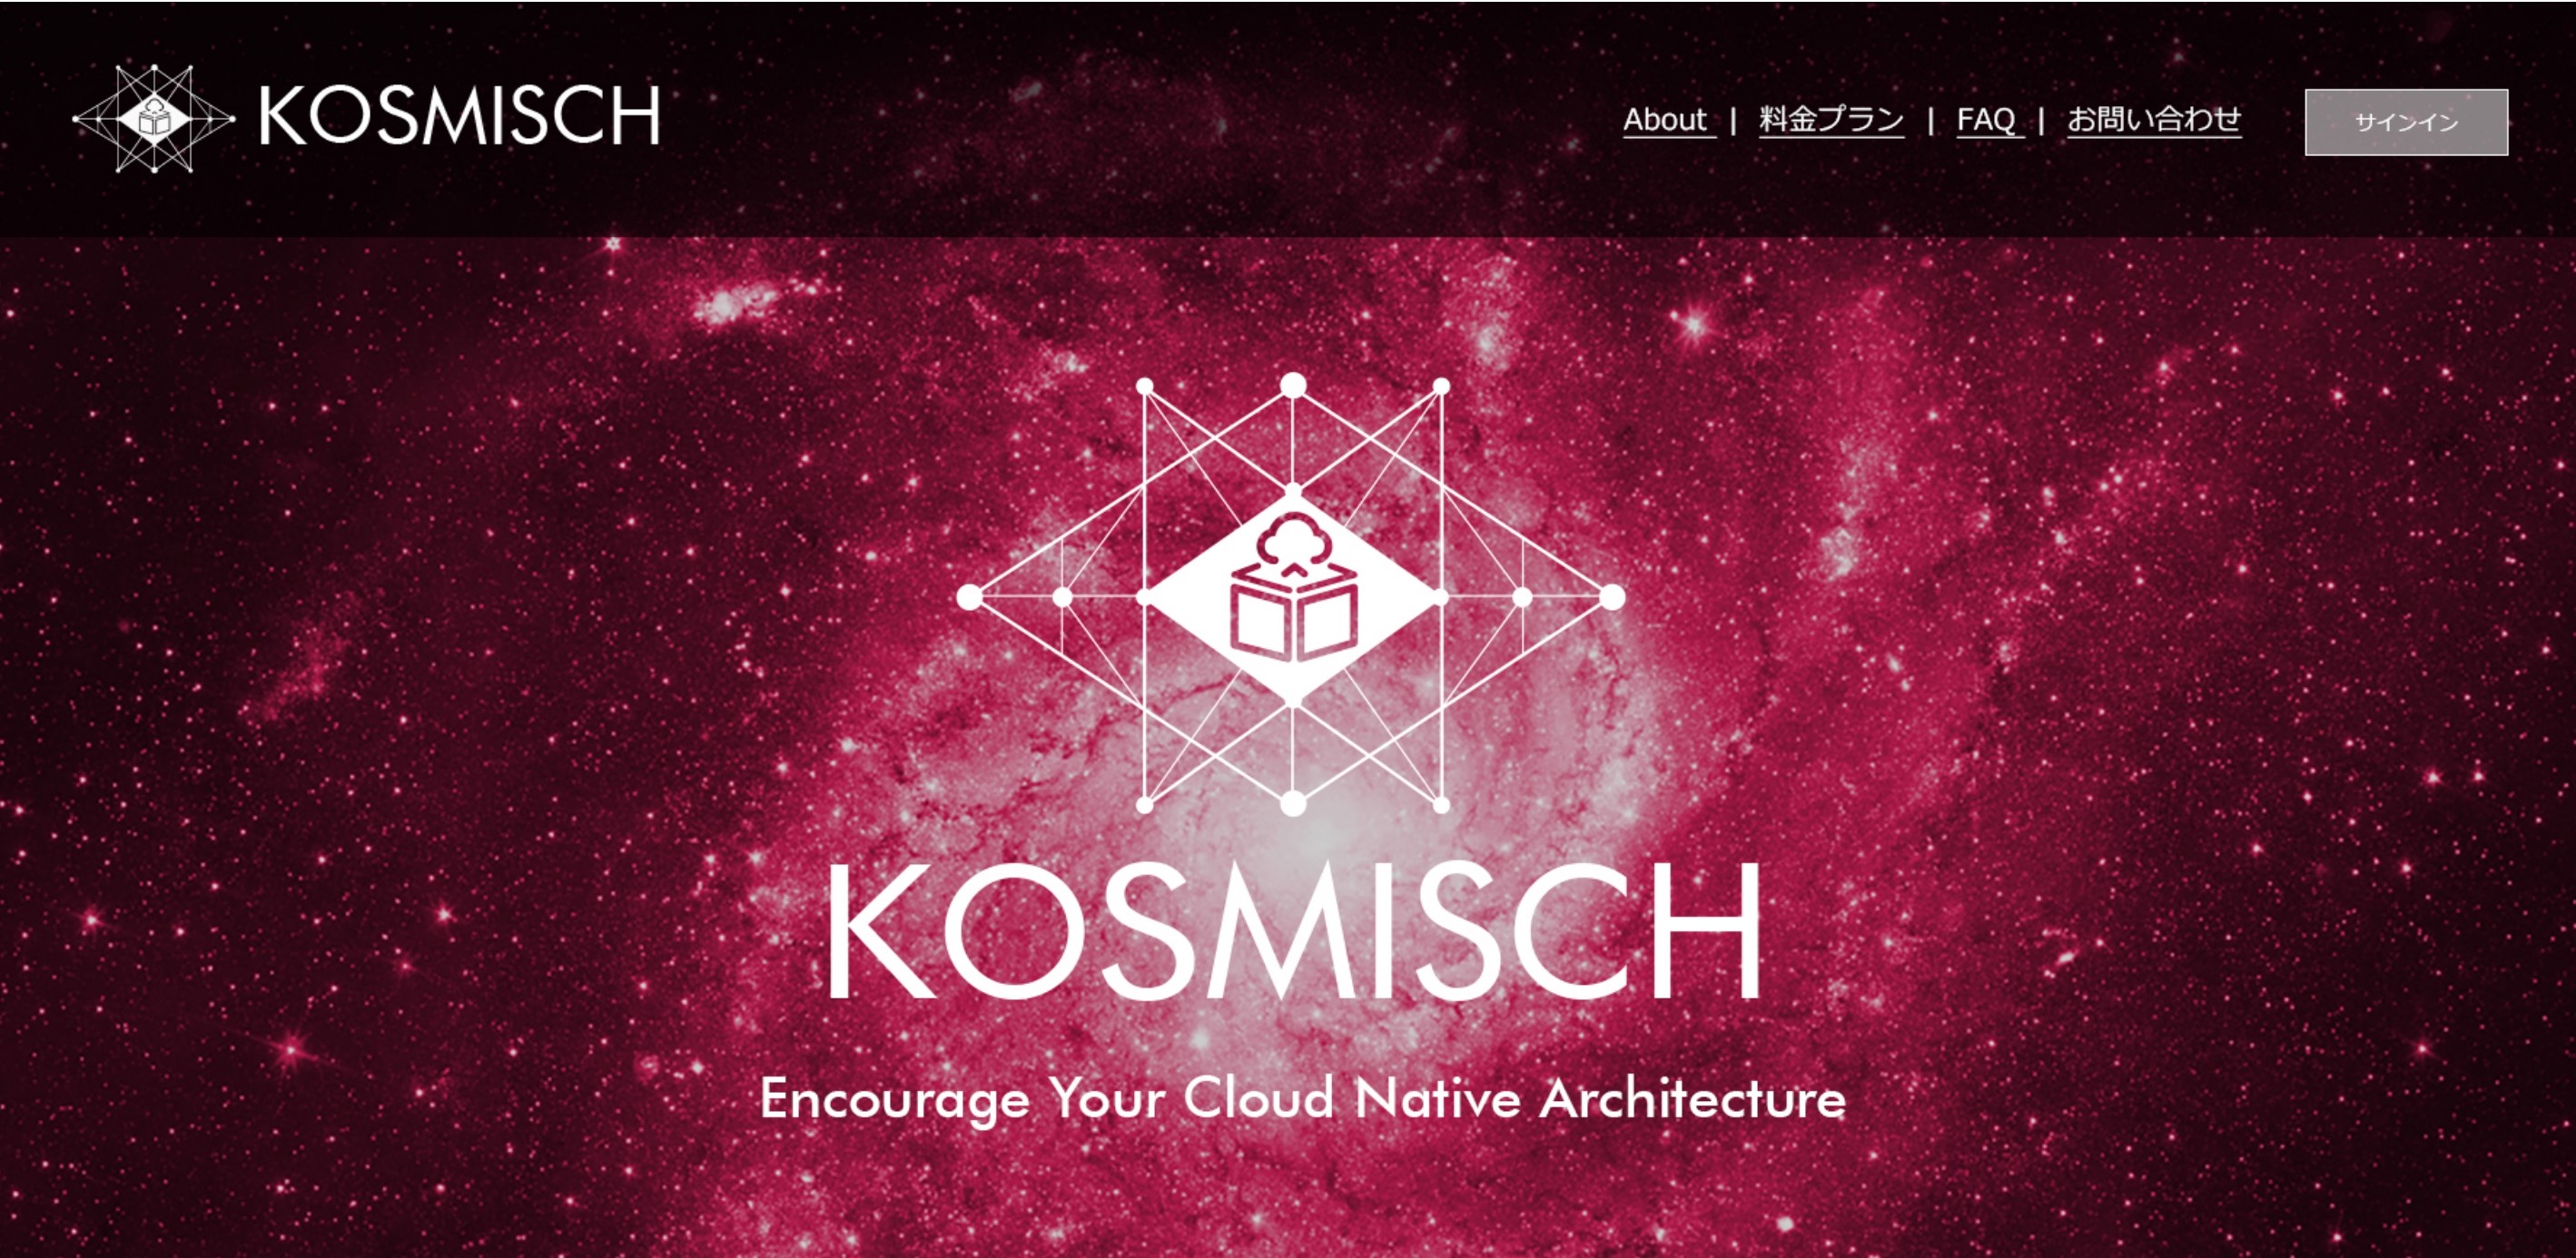 新キャッチコピーは「Encourage Your Cloud Native Architecture」